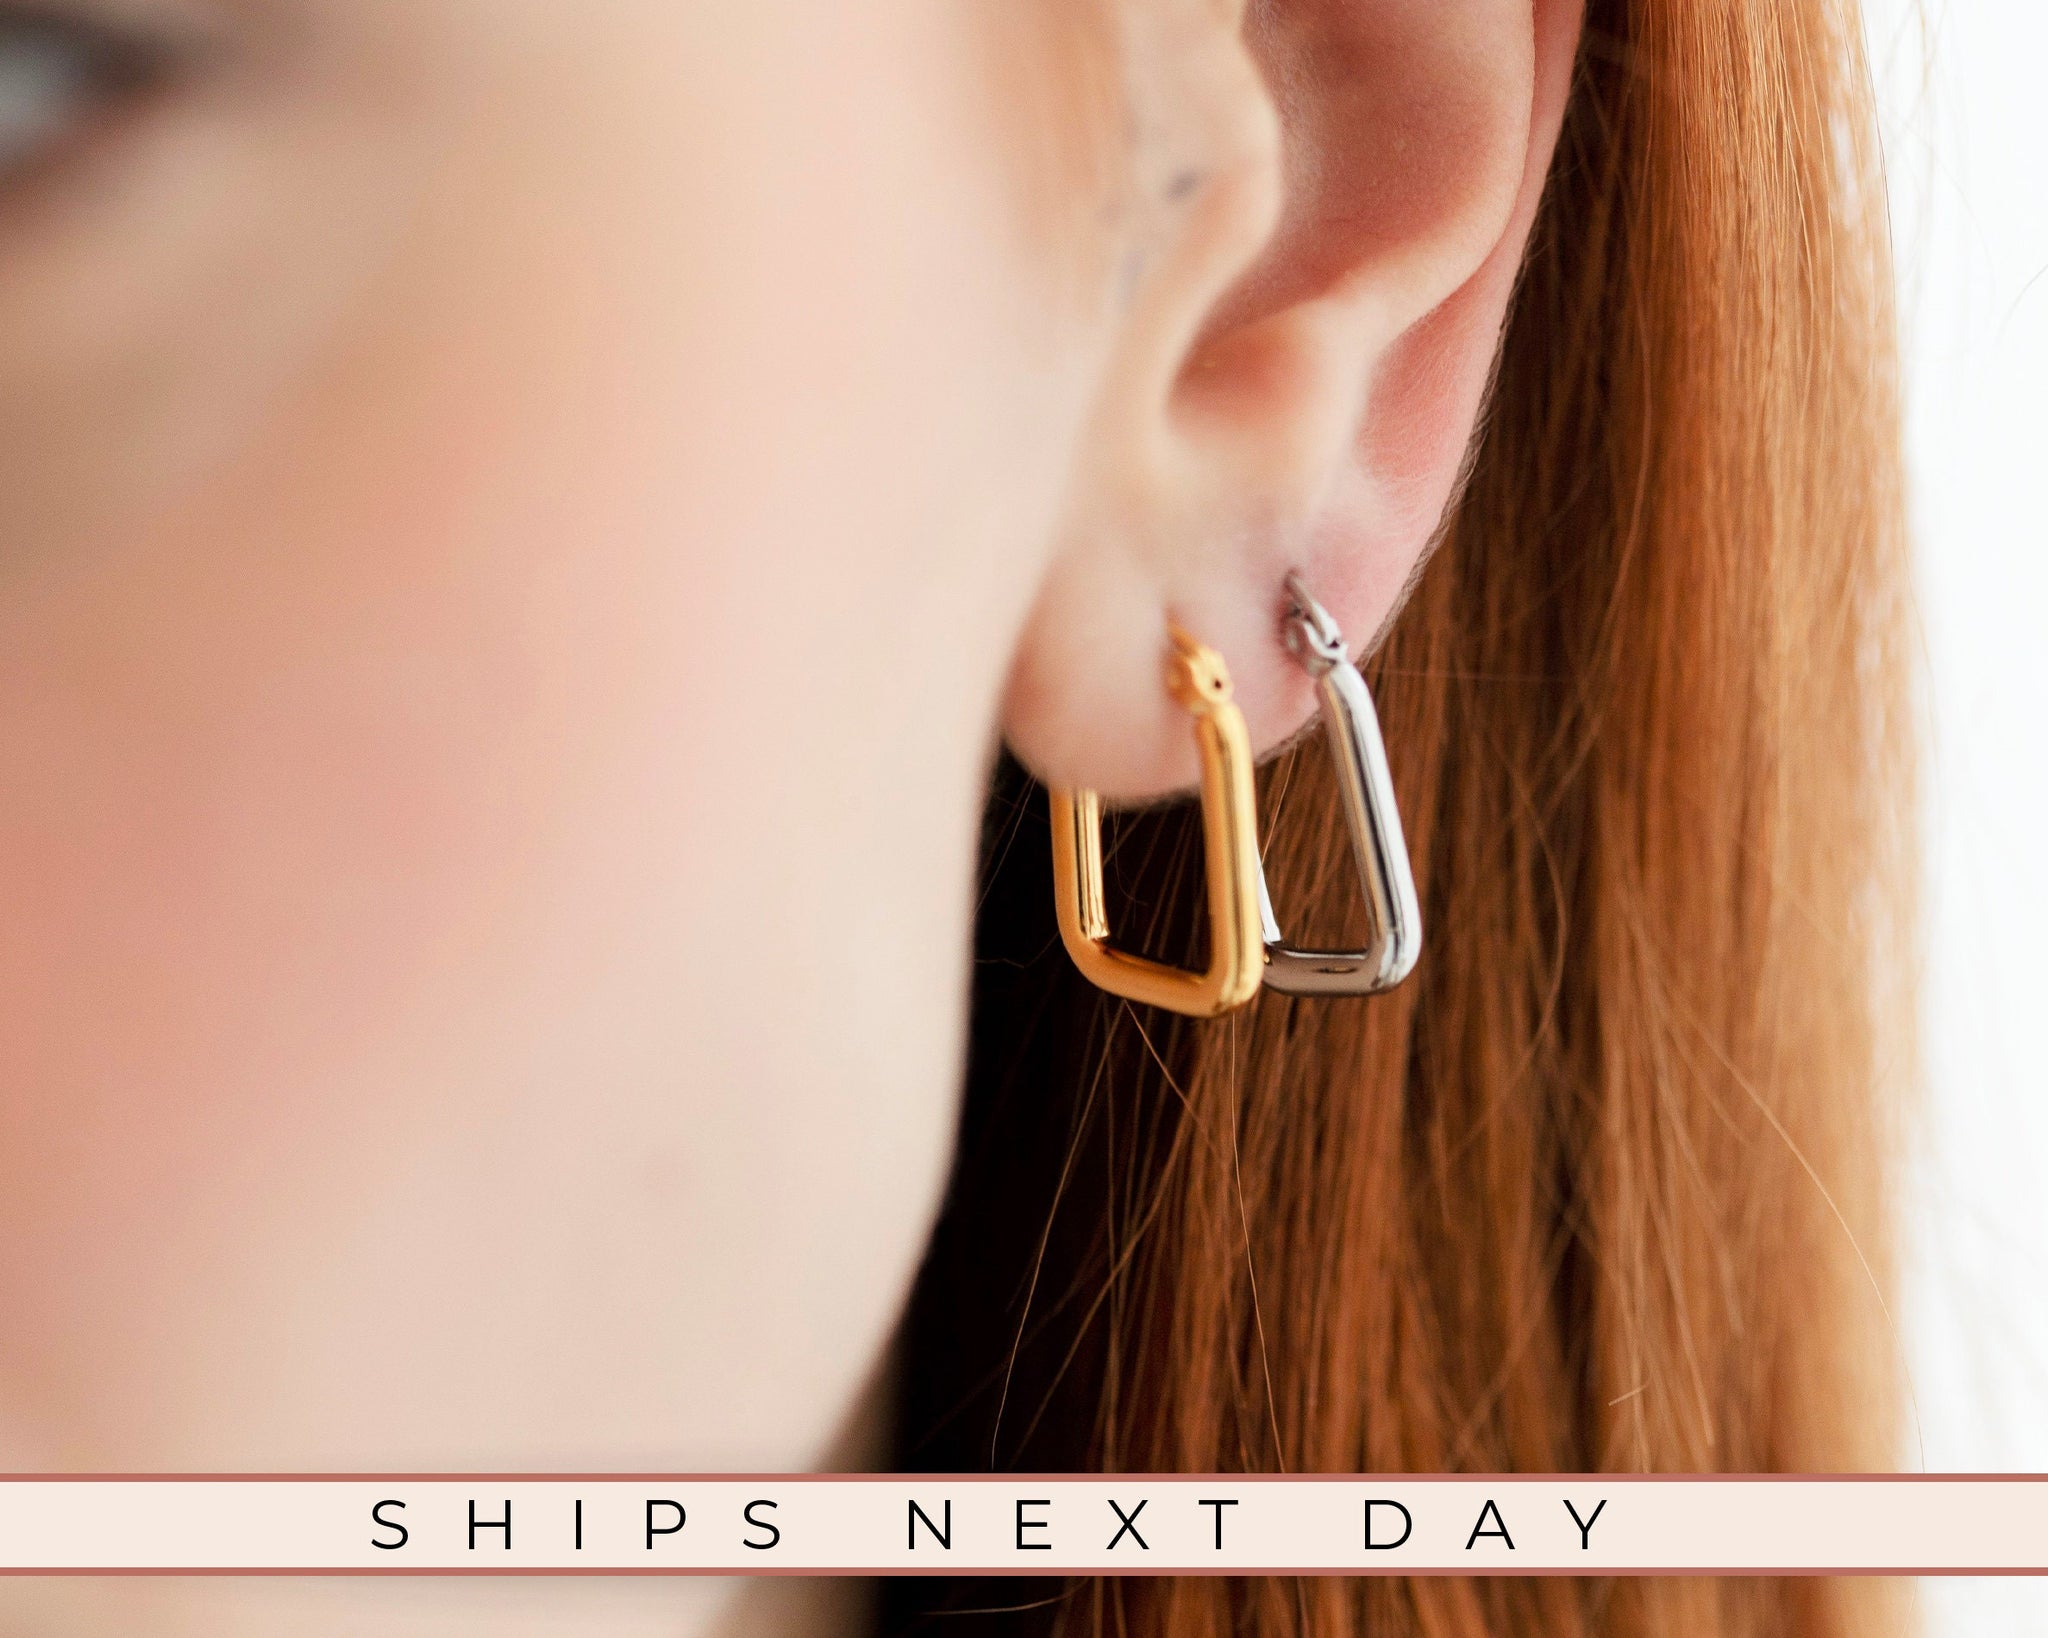 U Shape Earrings,18K Gold Hoop Earrings, Gift For Mothers Day, Dainty Earrings, Mom To Be Gift, Unique Jewelry, Waterproof Simple Earrings